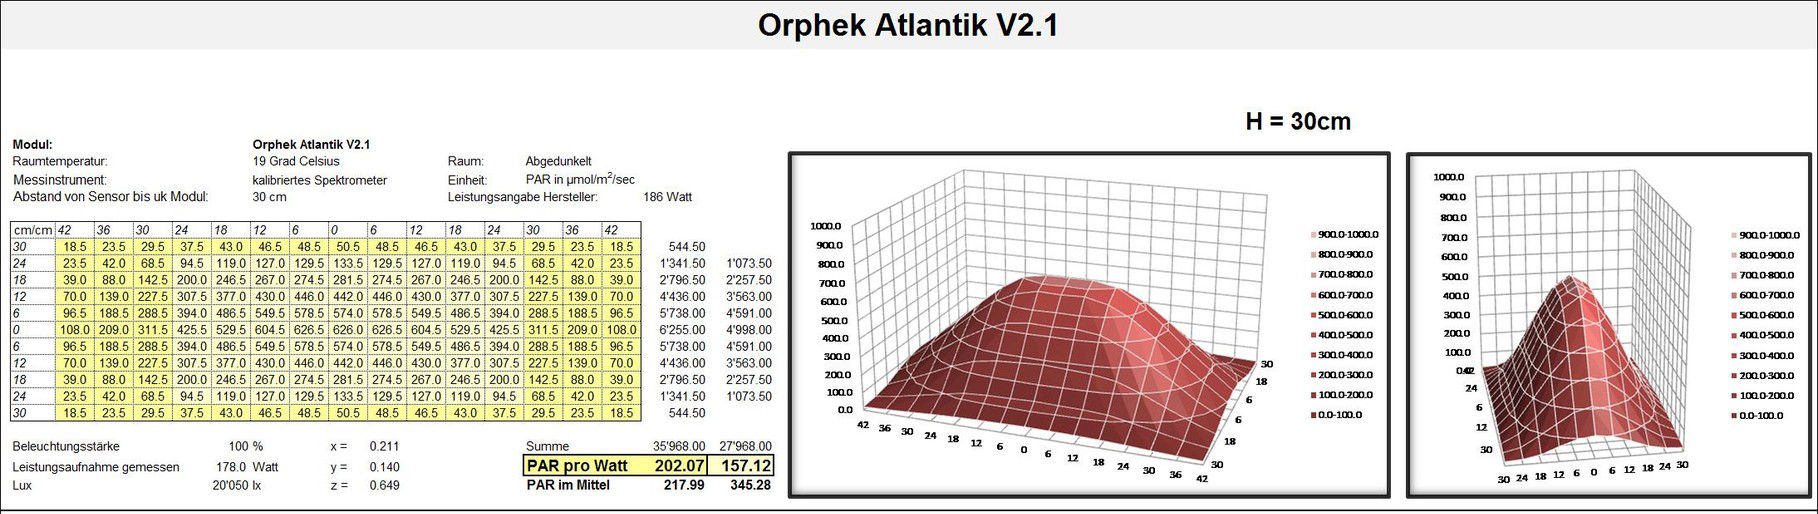 Orphek-Atlantik PAR CARTE-v2.1